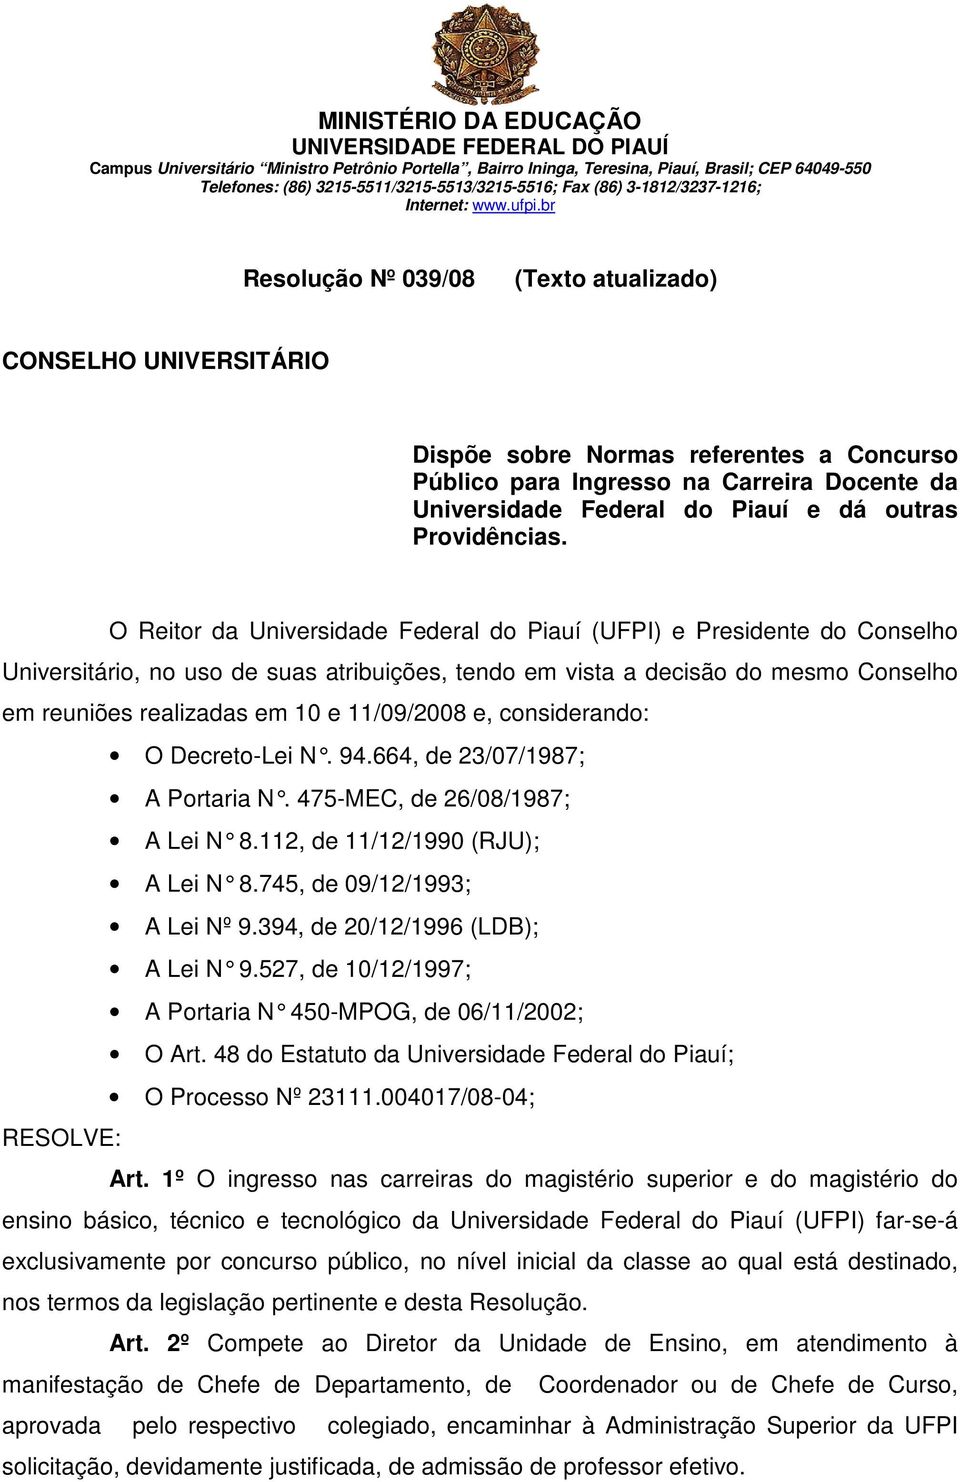 O Reitor da Universidade Federal do Piauí (UFPI) e Presidente do Conselho Universitário, no uso de suas atribuições, tendo em vista a decisão do mesmo Conselho em reuniões realizadas em 10 e